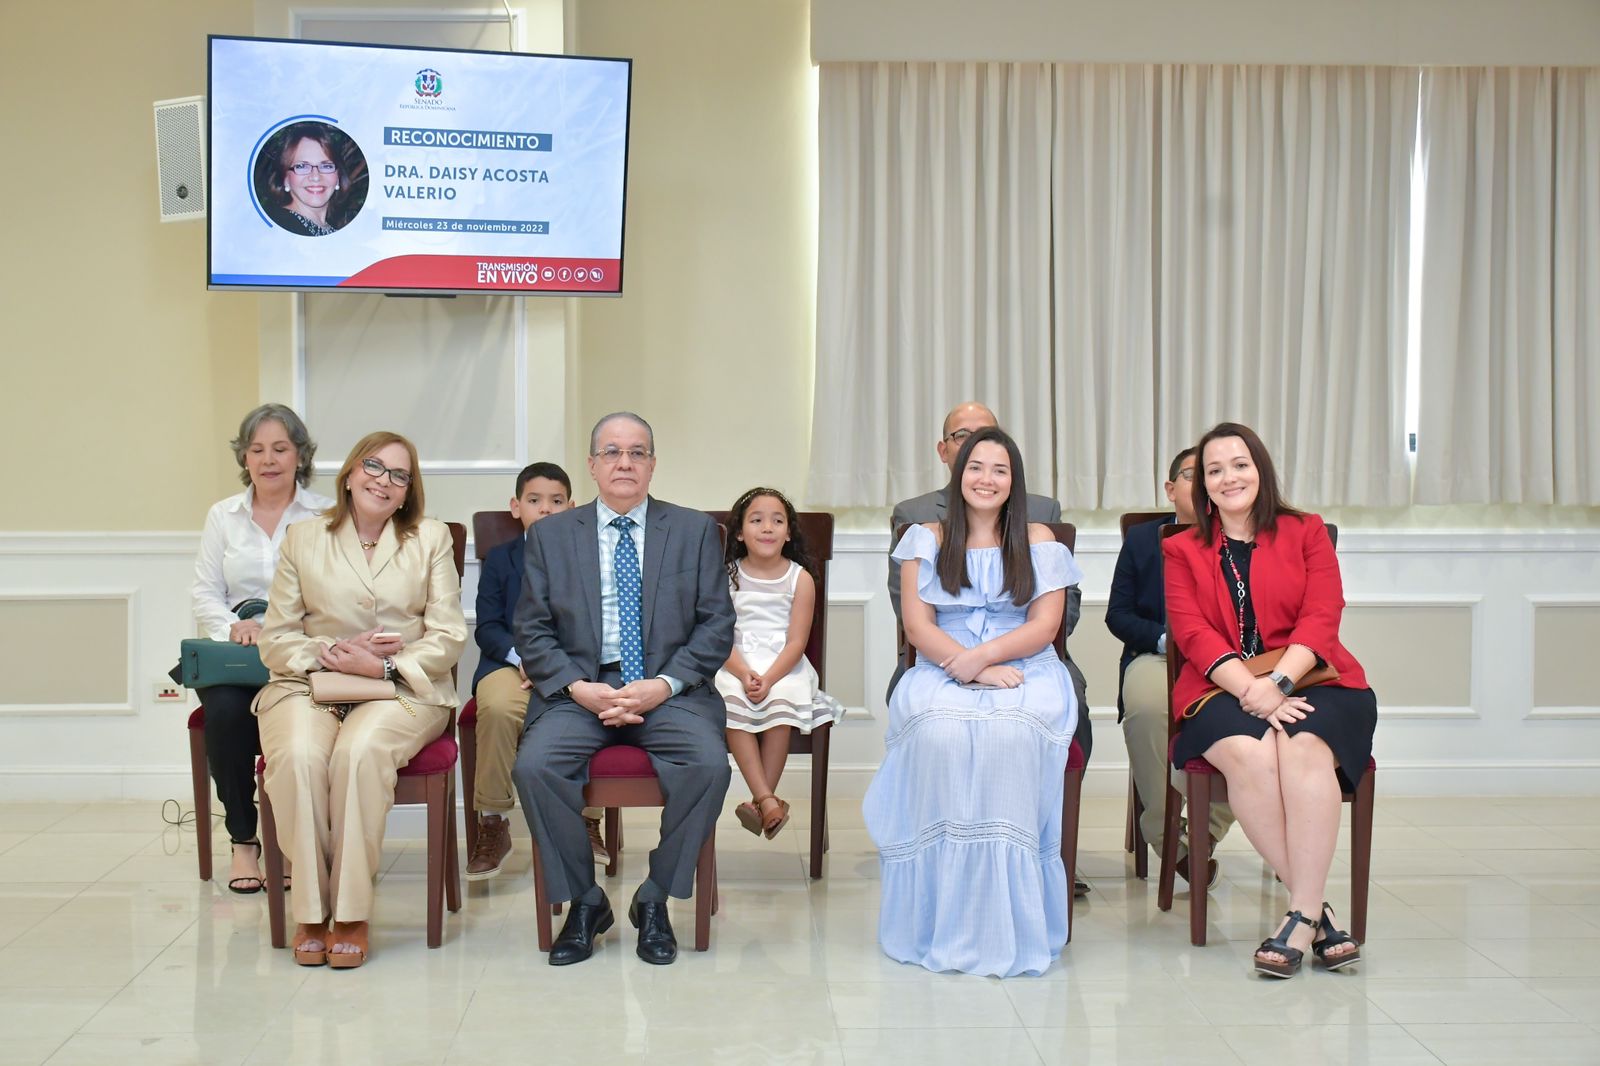 Senado de la Republica reconoce trayectoria de especialista en neuropsiquiatria Daisy Acosta 3